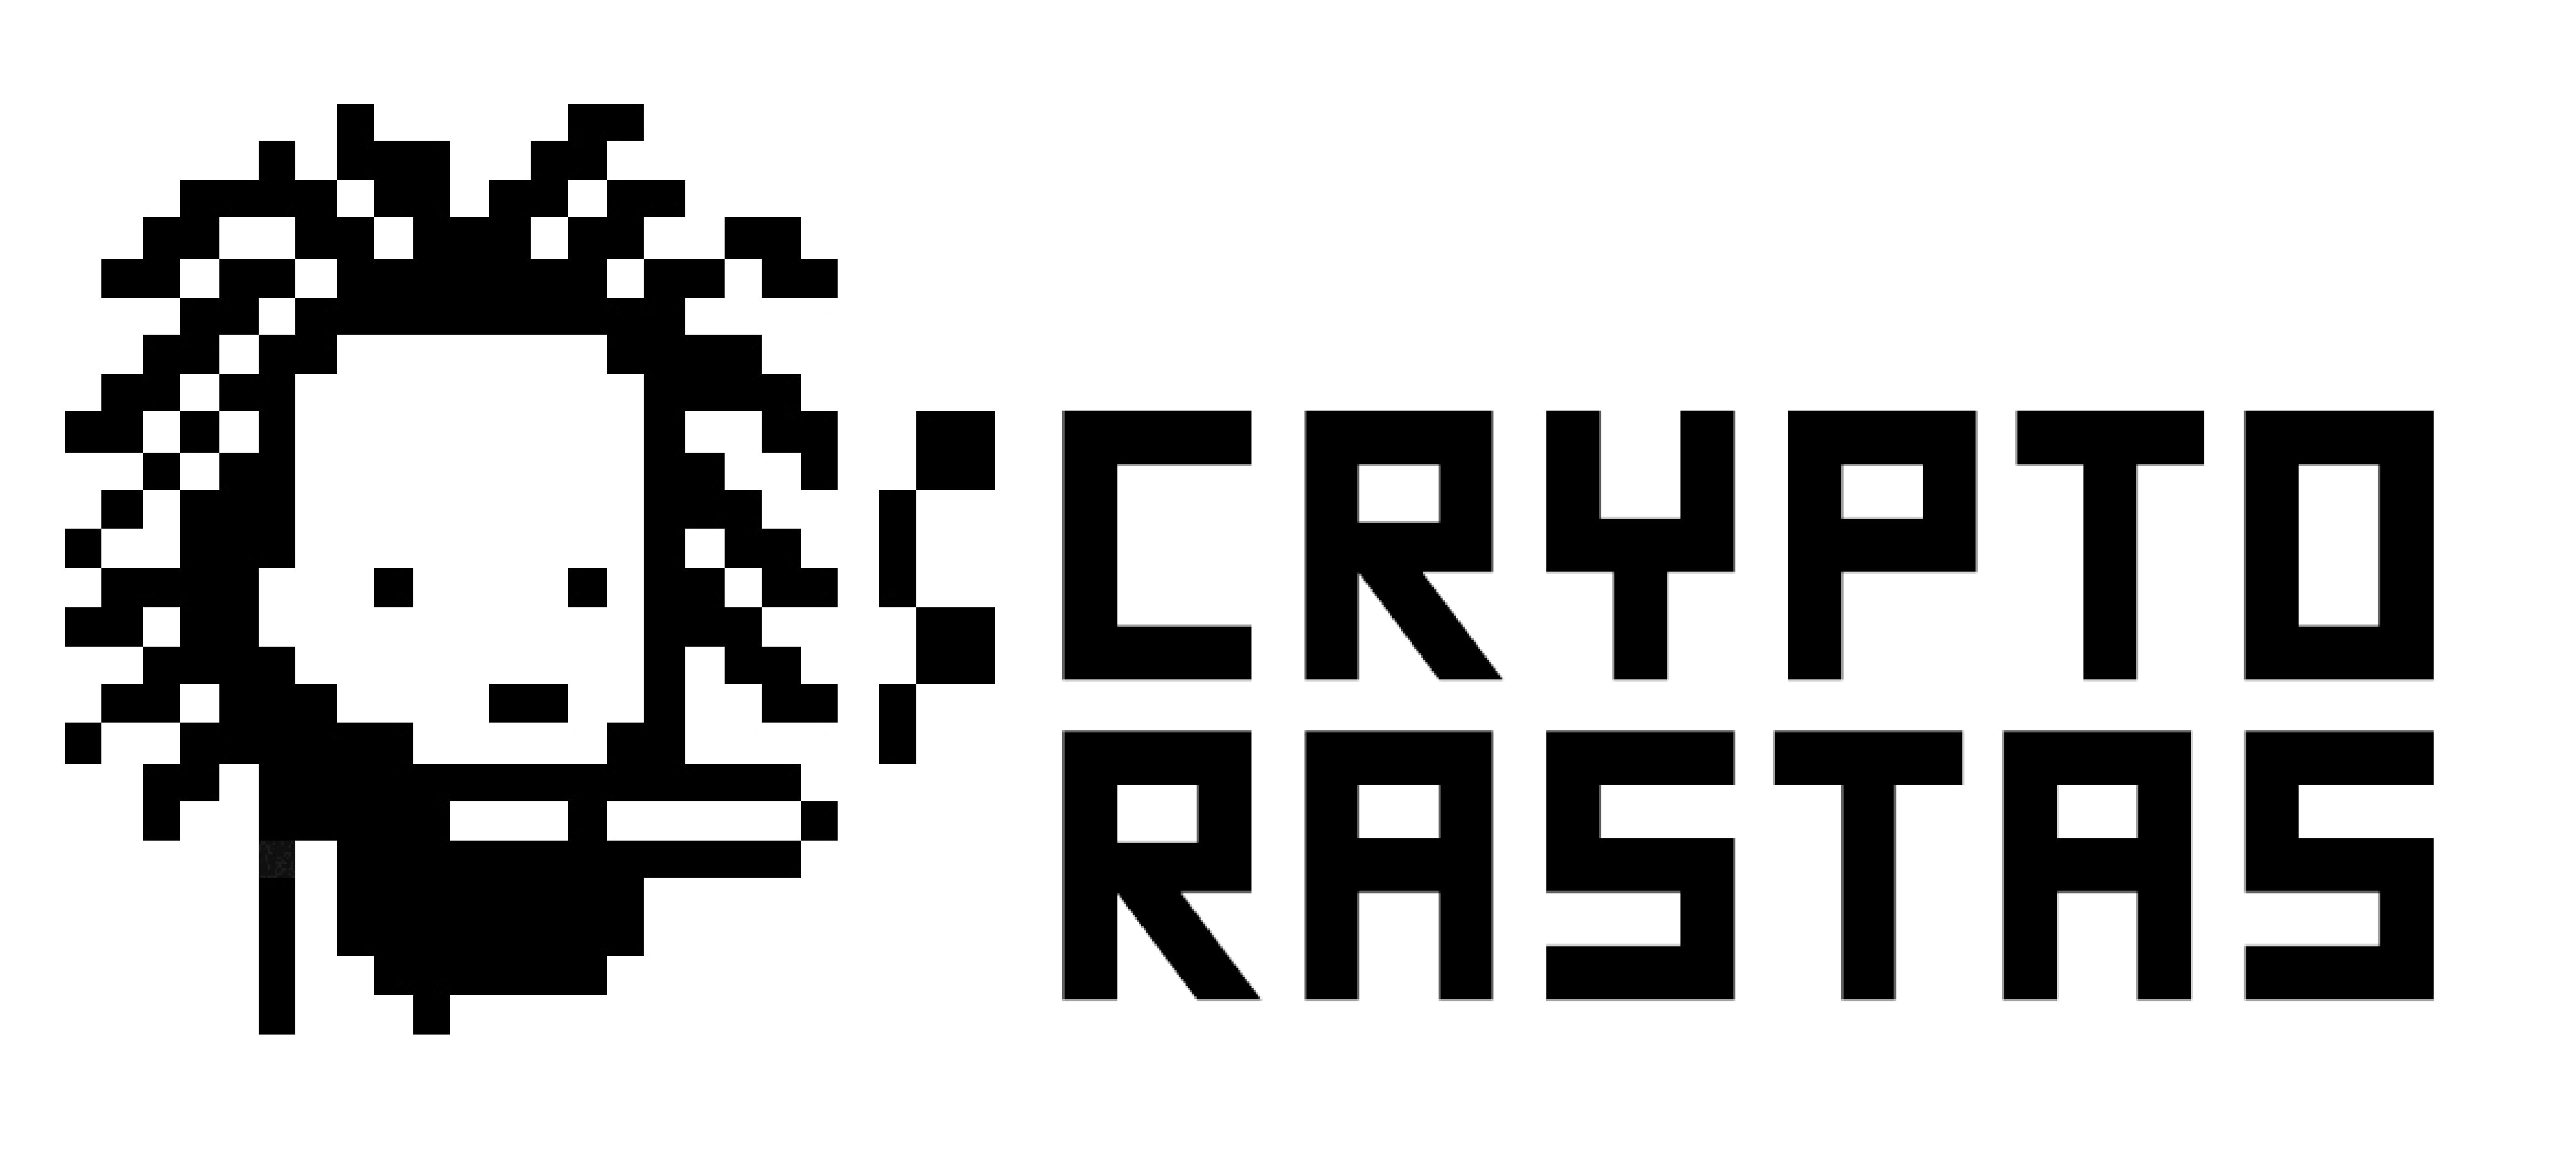 cryptorastas